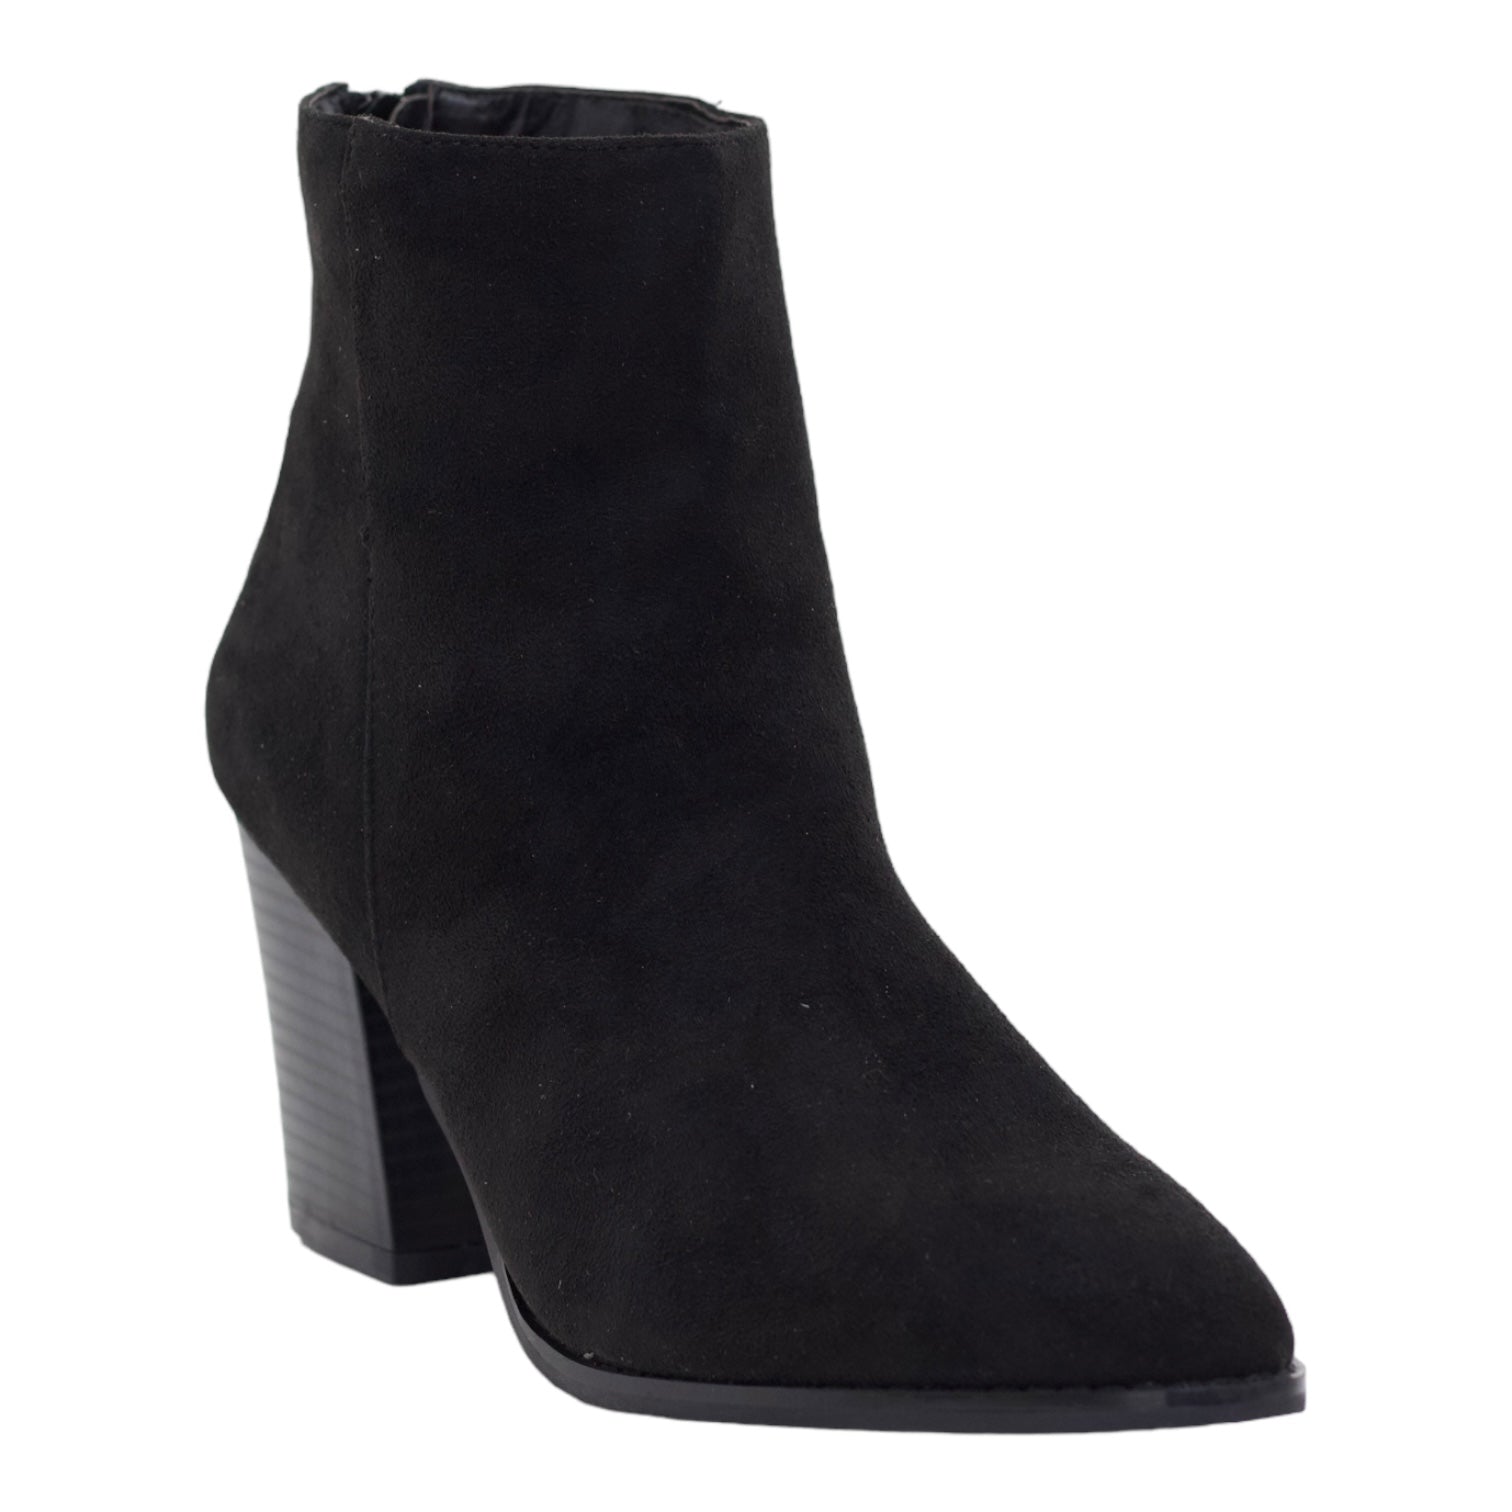 Black 8cm block heel LA08-17 suede ankle boot shelin